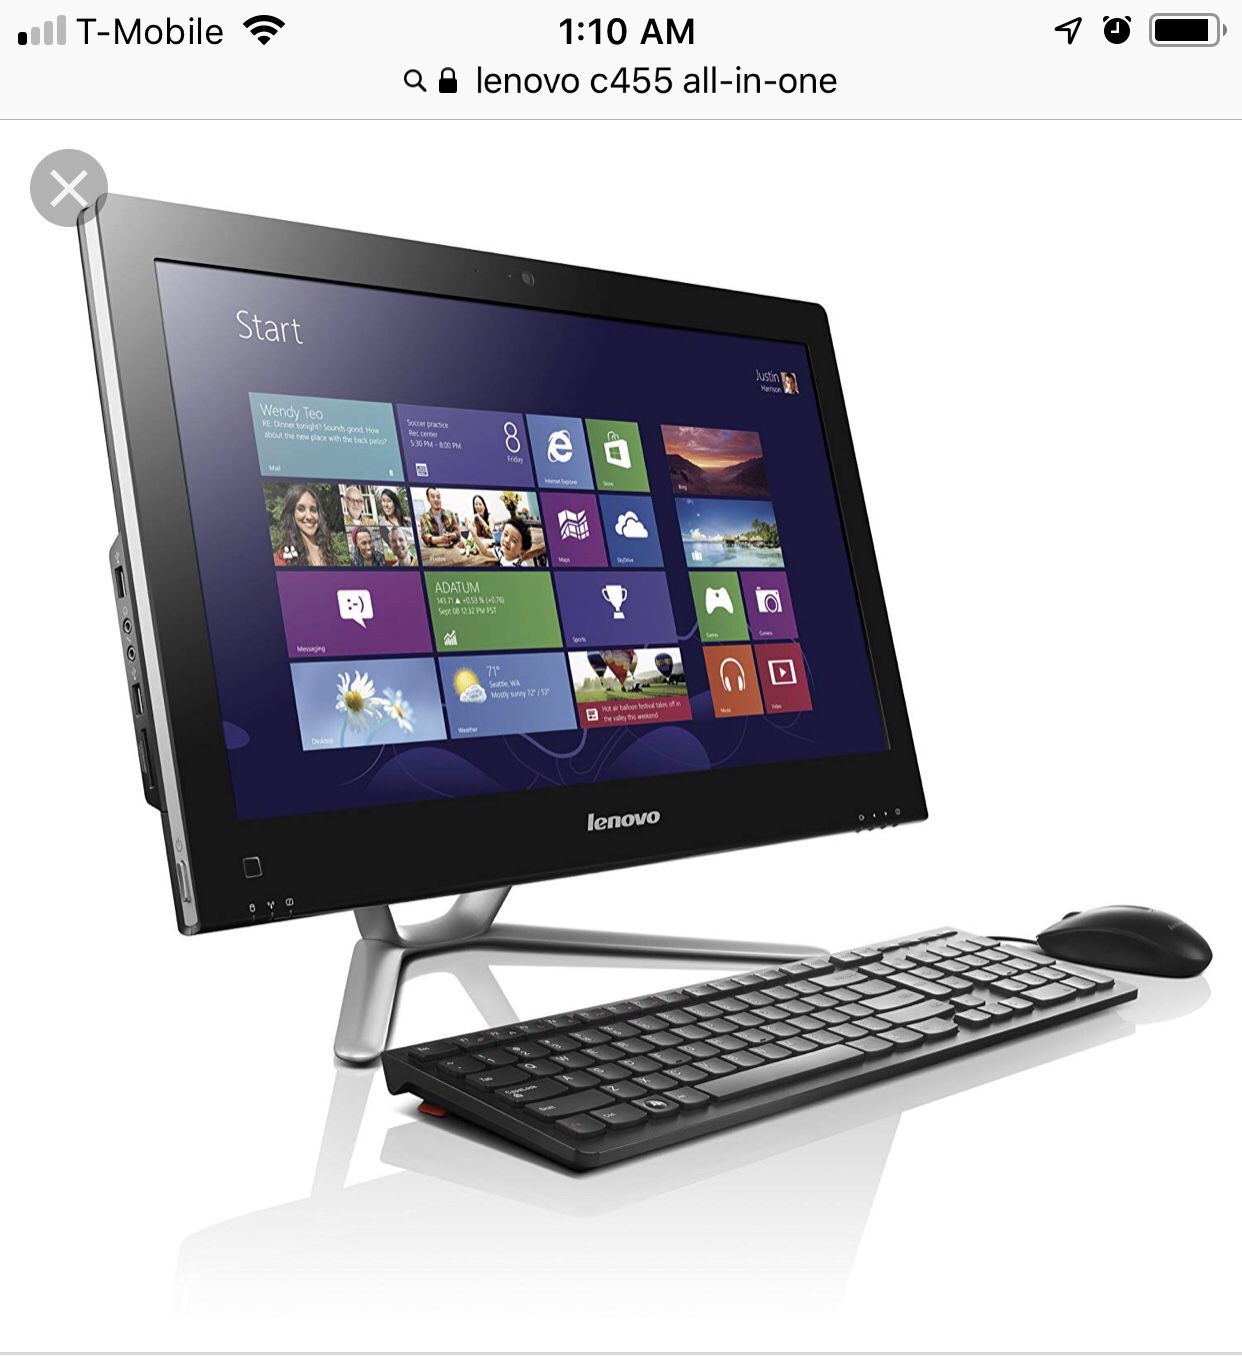 Lenovo all-in-one desktop